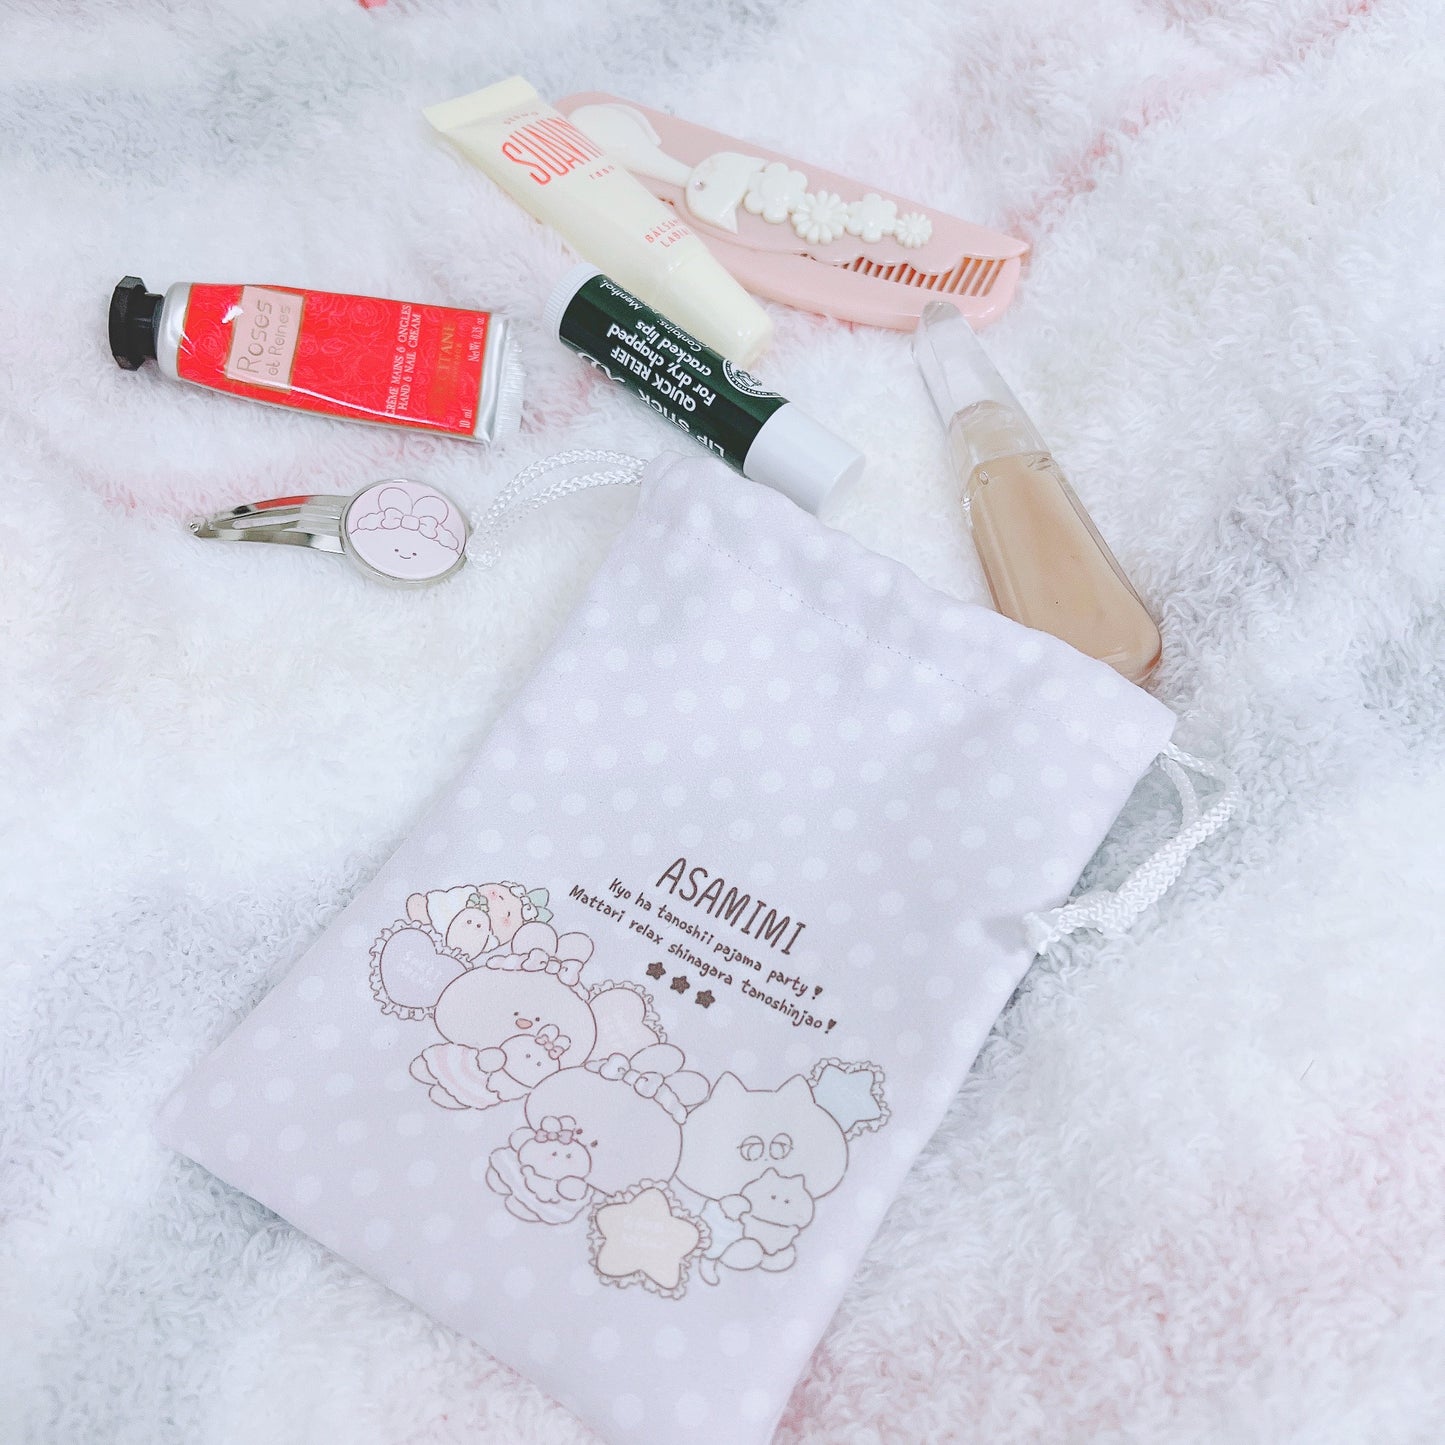 [Asamimi-chan] Mini borsetta con coulisse (pigiama party) [spedito all'inizio di ottobre]